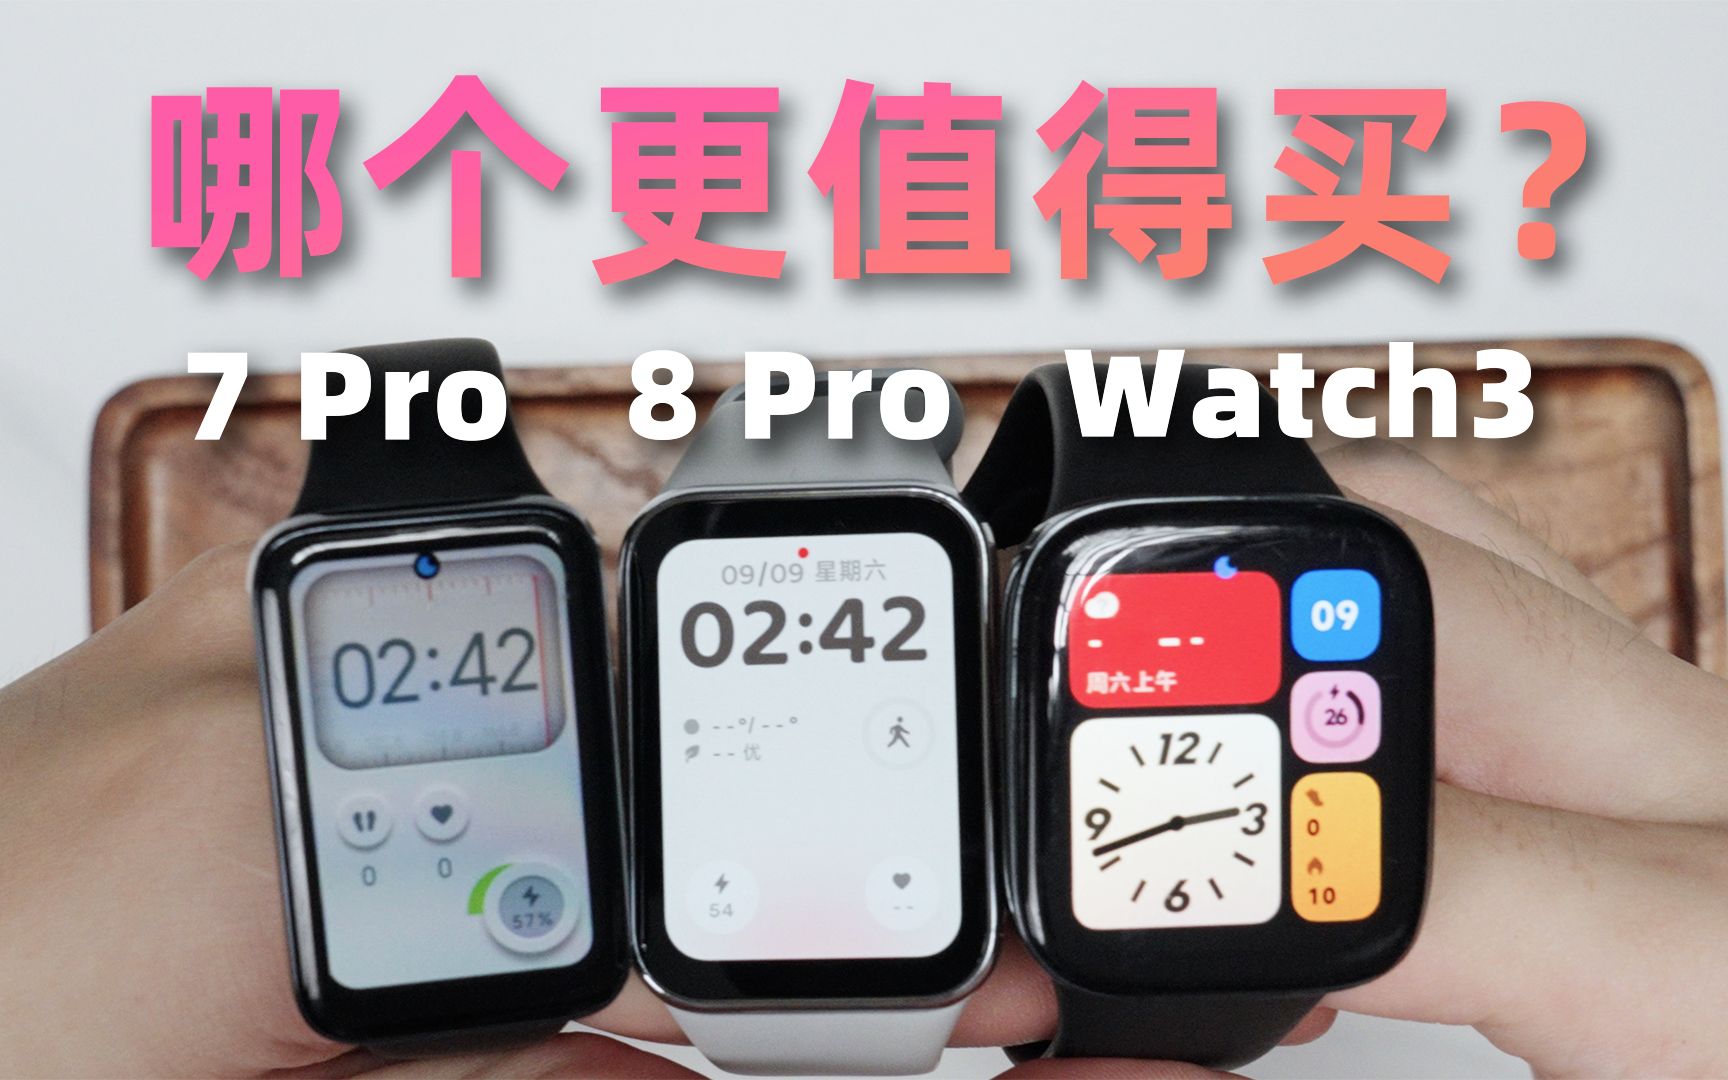 小米手环8Pro VS 红米Watch 3 VS 小米手环7Pro，实测对比，哪个更值得买？